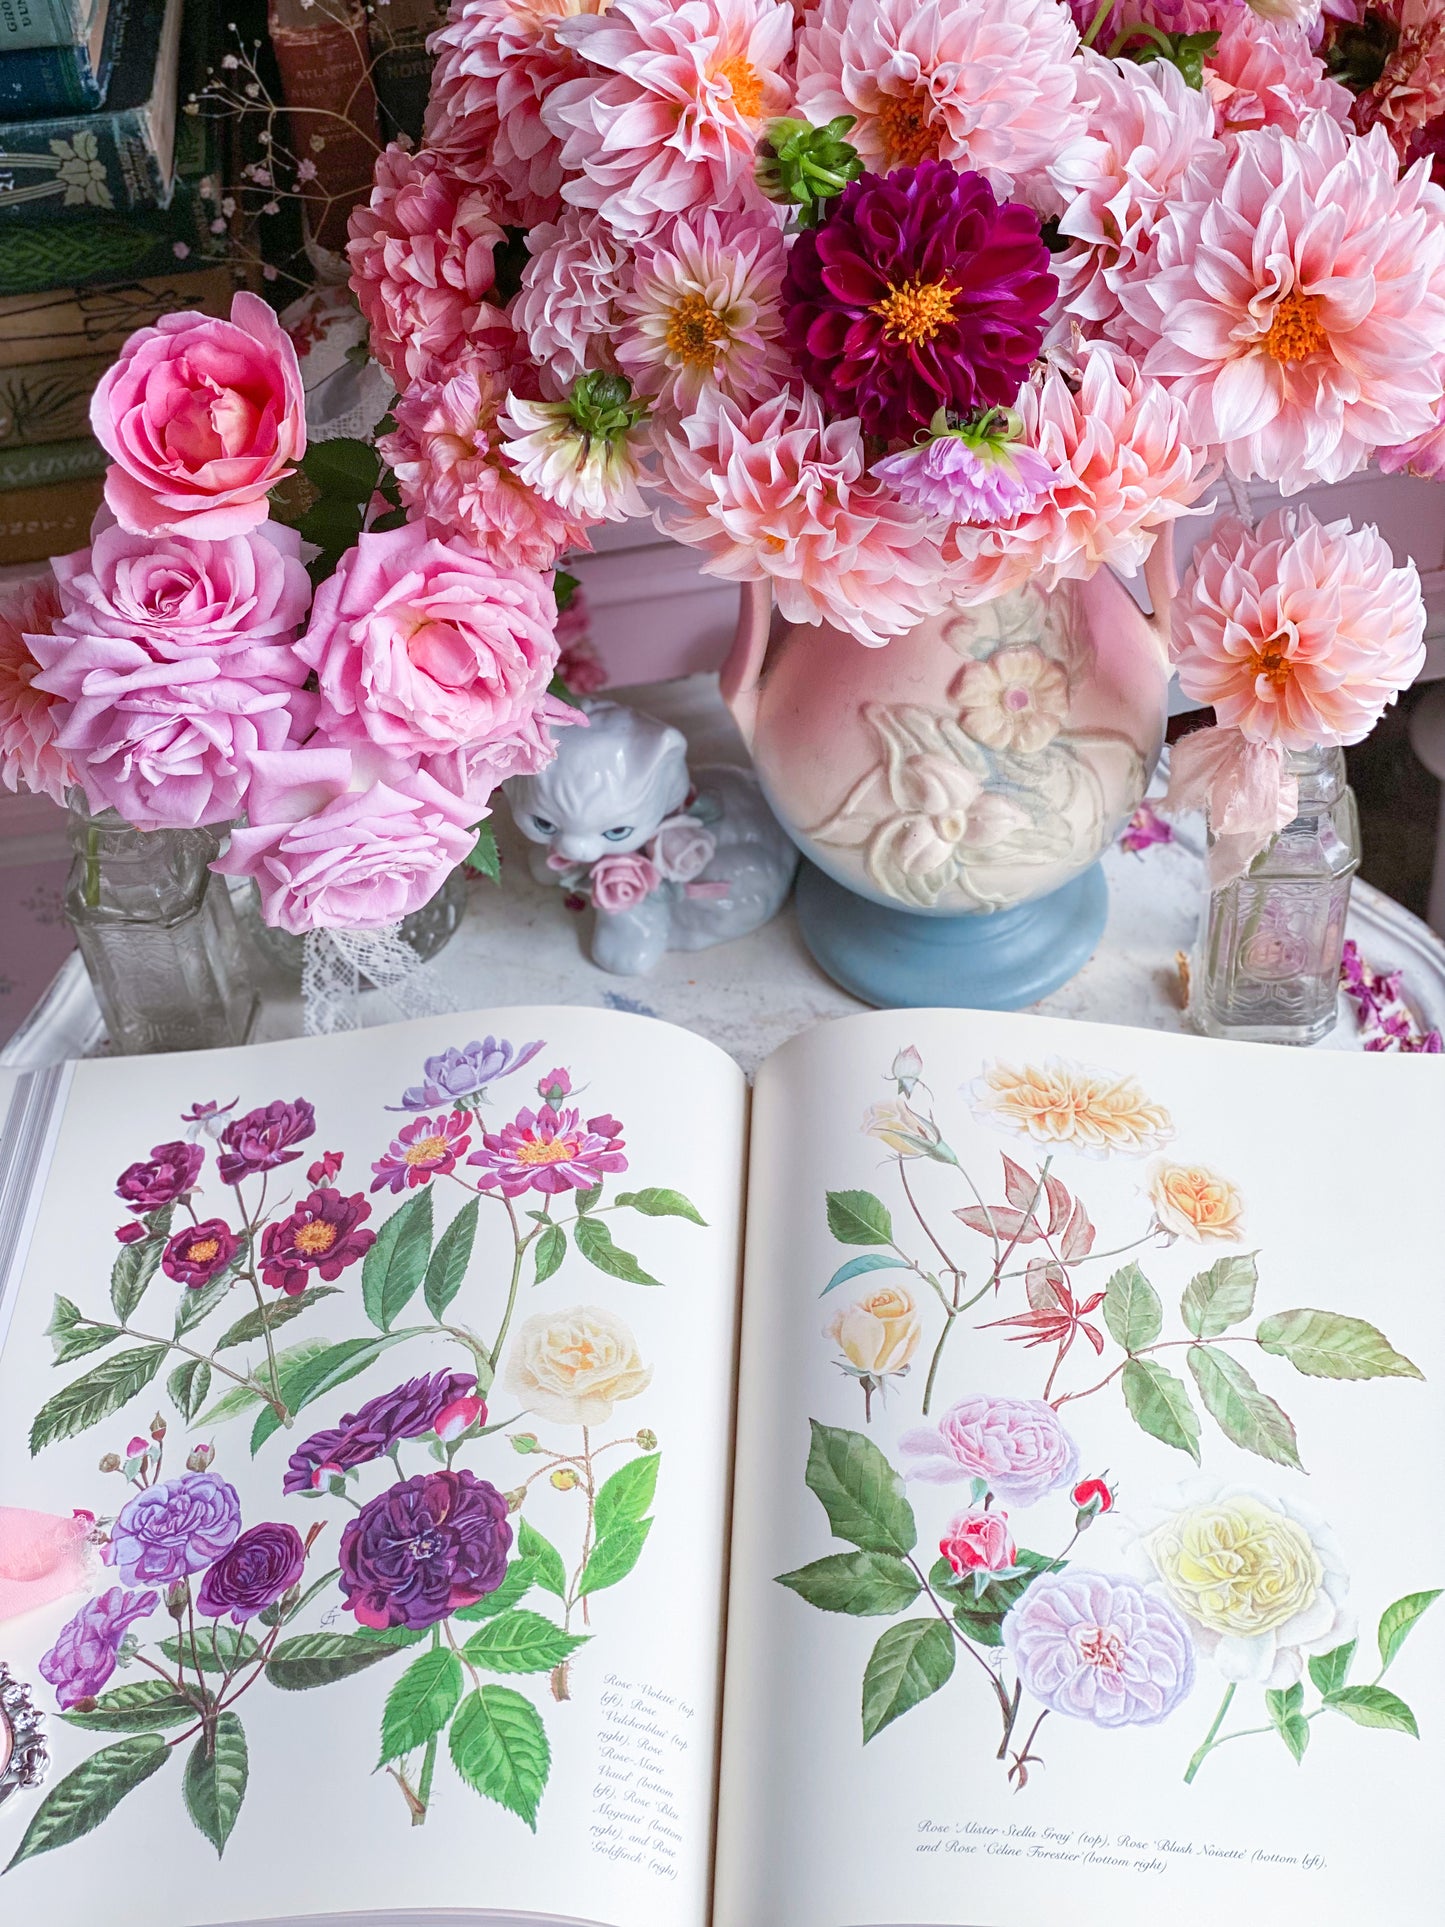 Vollständige Blumengemälde und Zeichnungen von Graham Stuart Thomas 